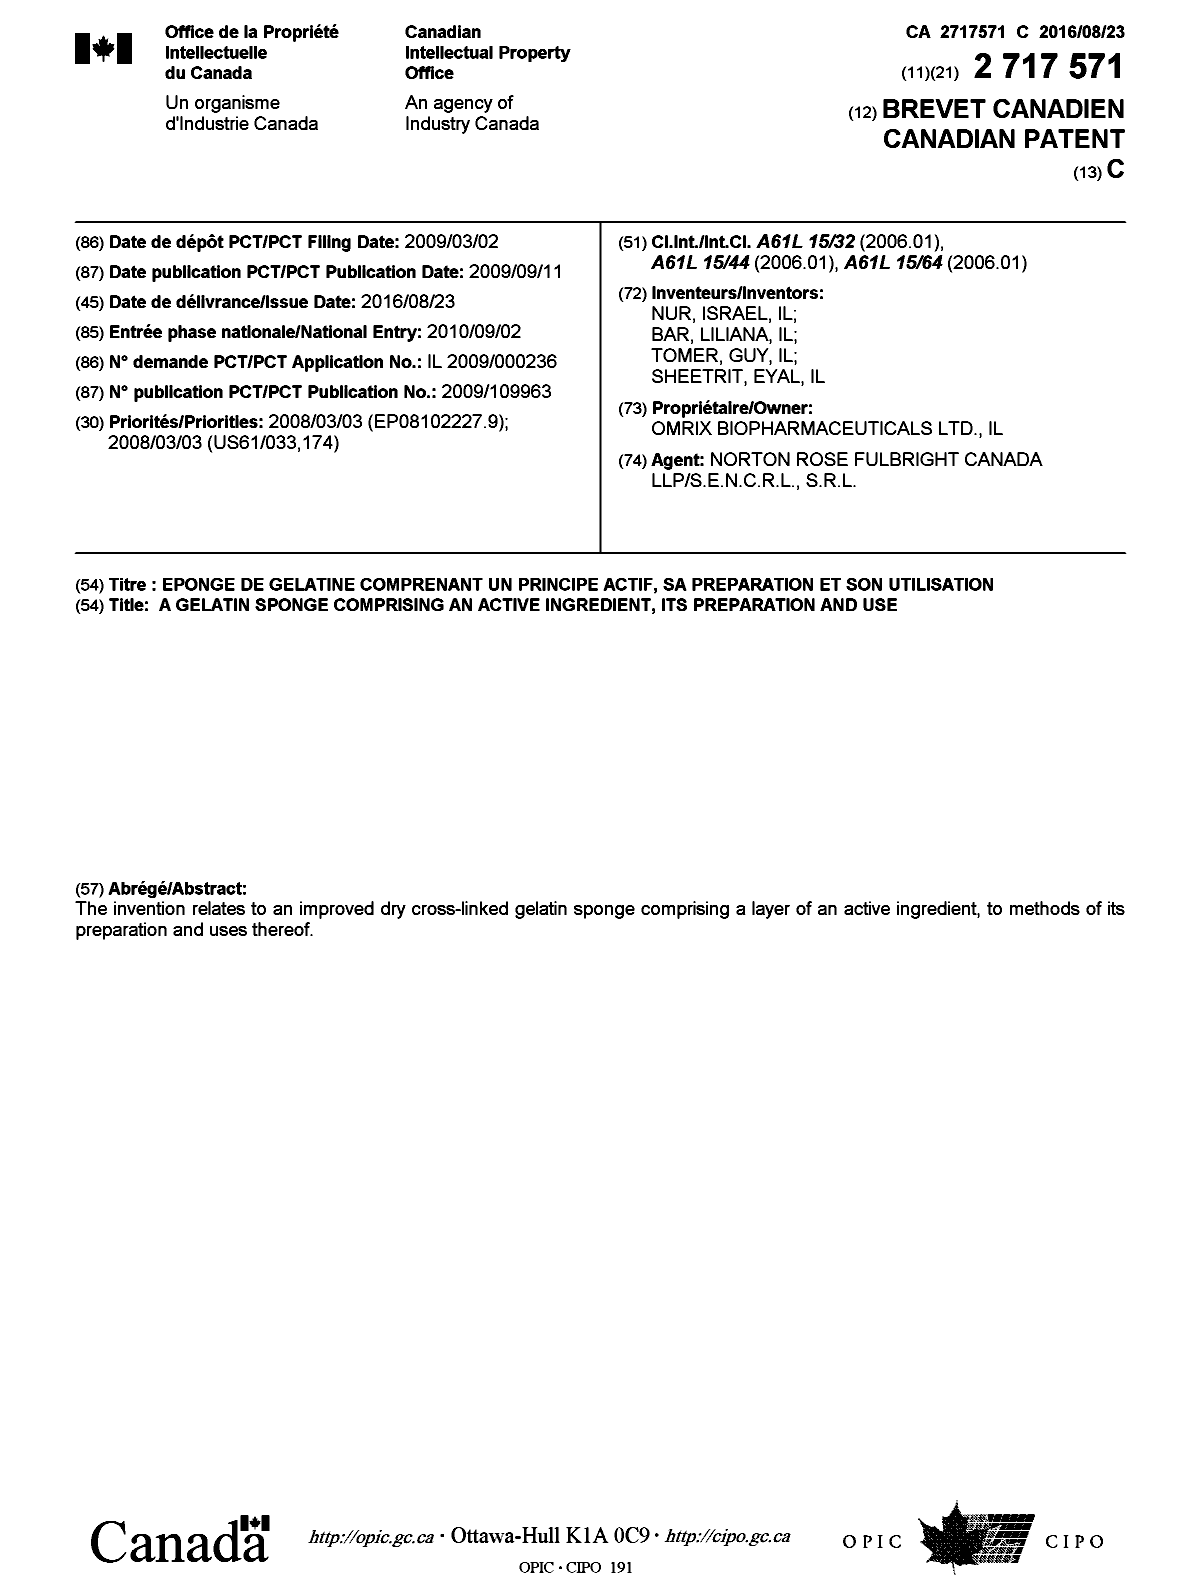 Document de brevet canadien 2717571. Page couverture 20151218. Image 1 de 1